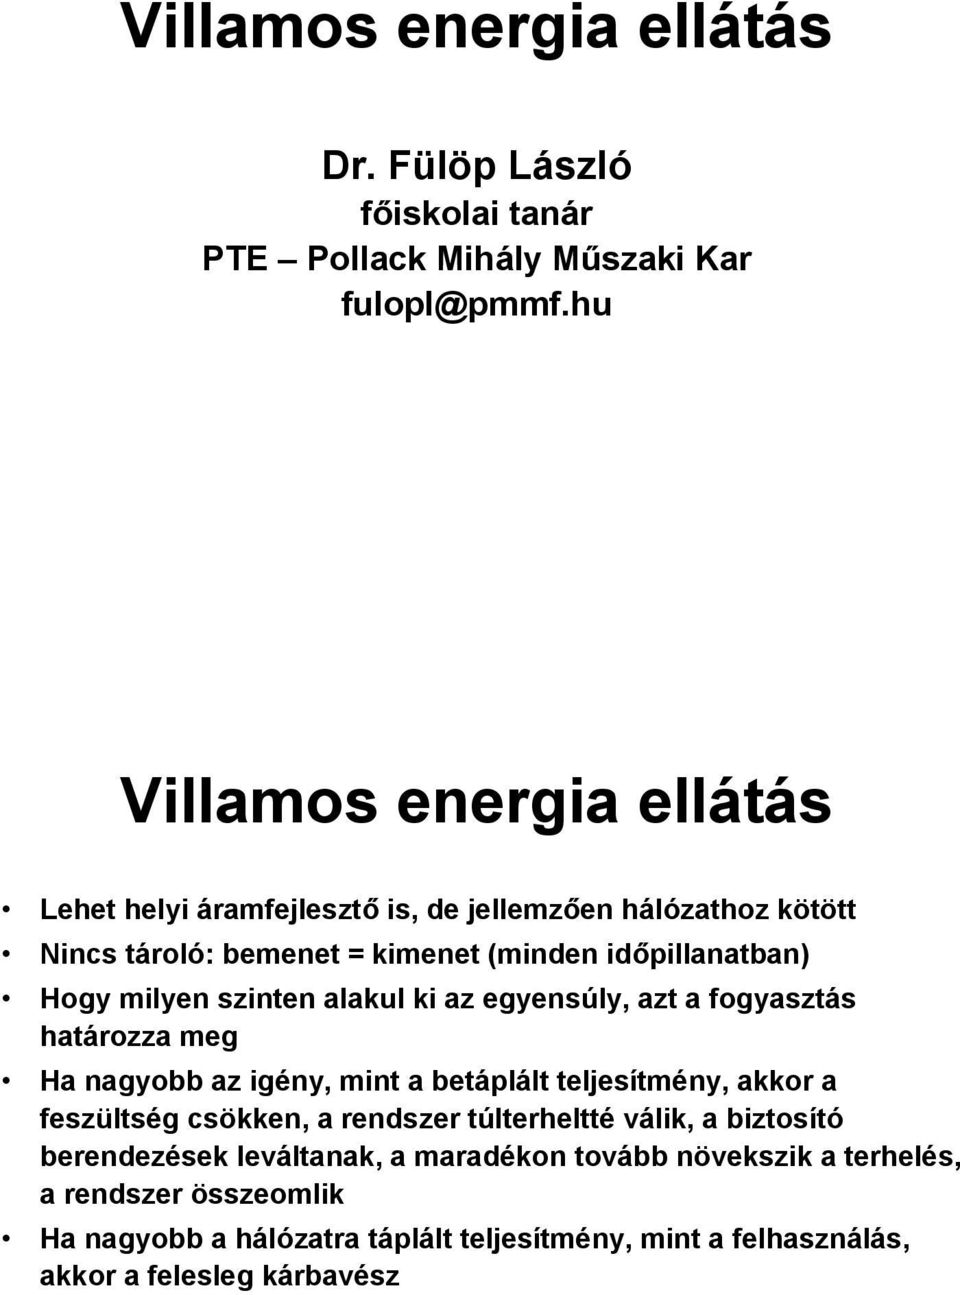 Villamos energia ellátás - PDF Ingyenes letöltés